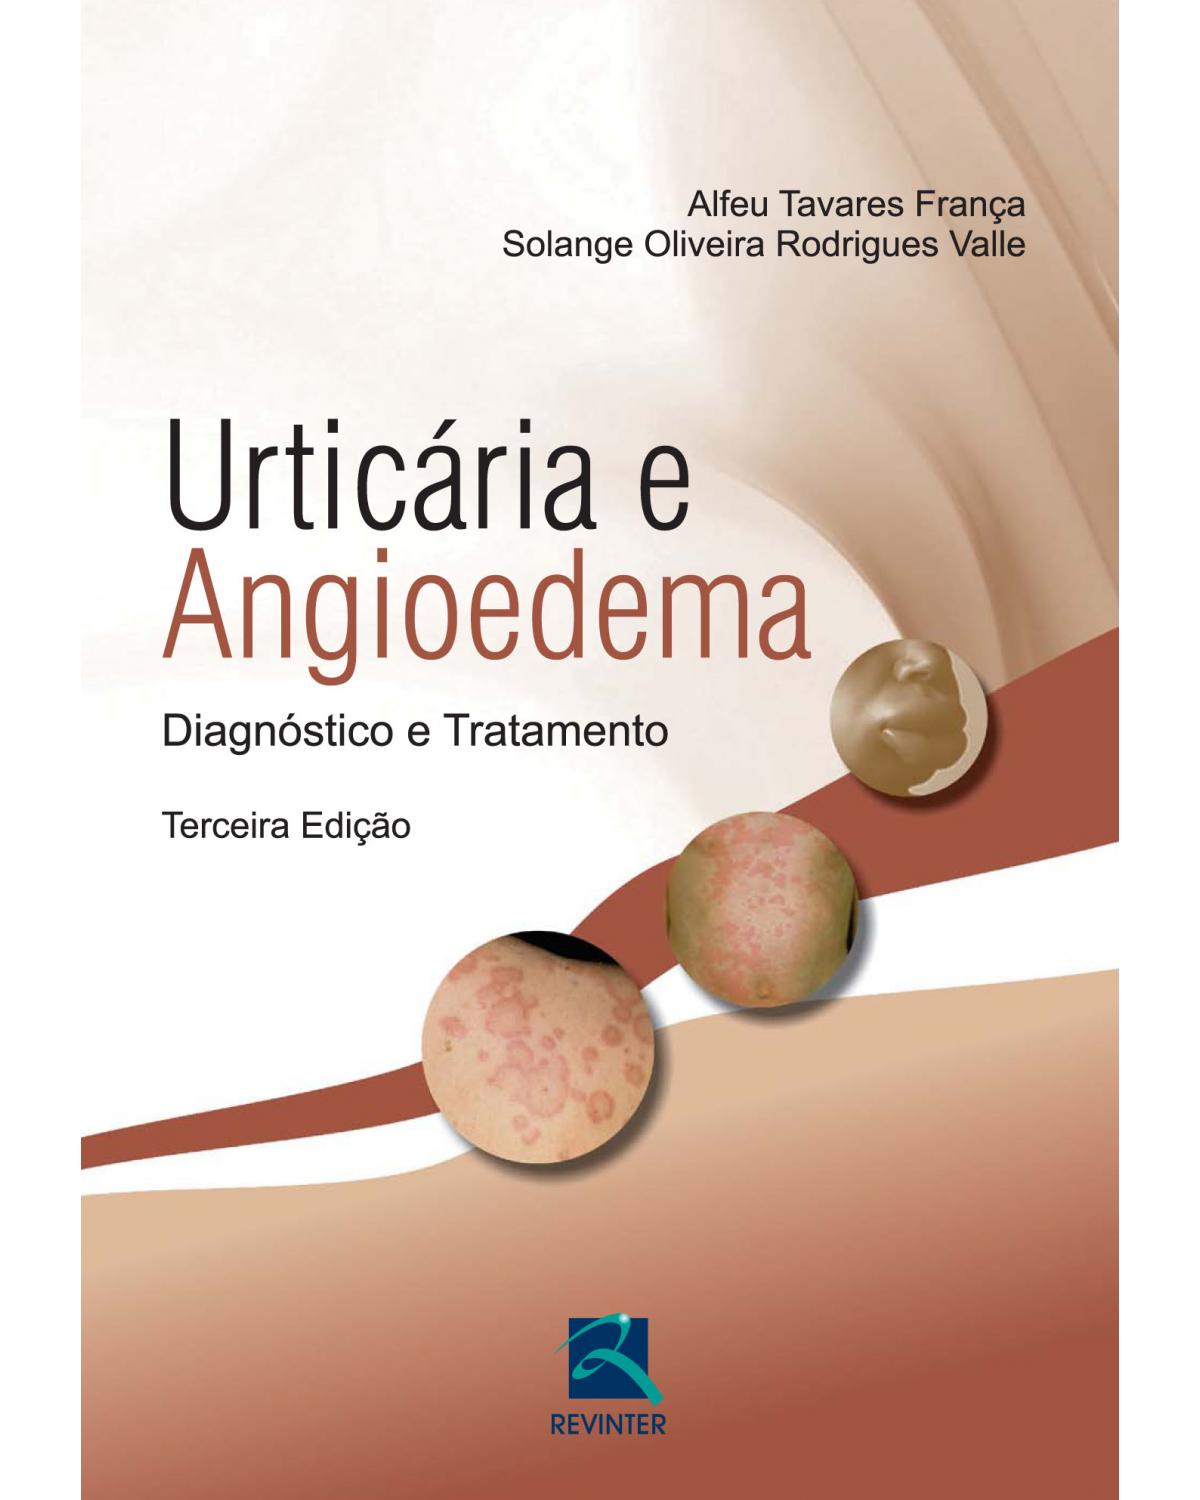 Urticária e angiodema - diagnóstico e tratamento - 3ª Edição | 2014